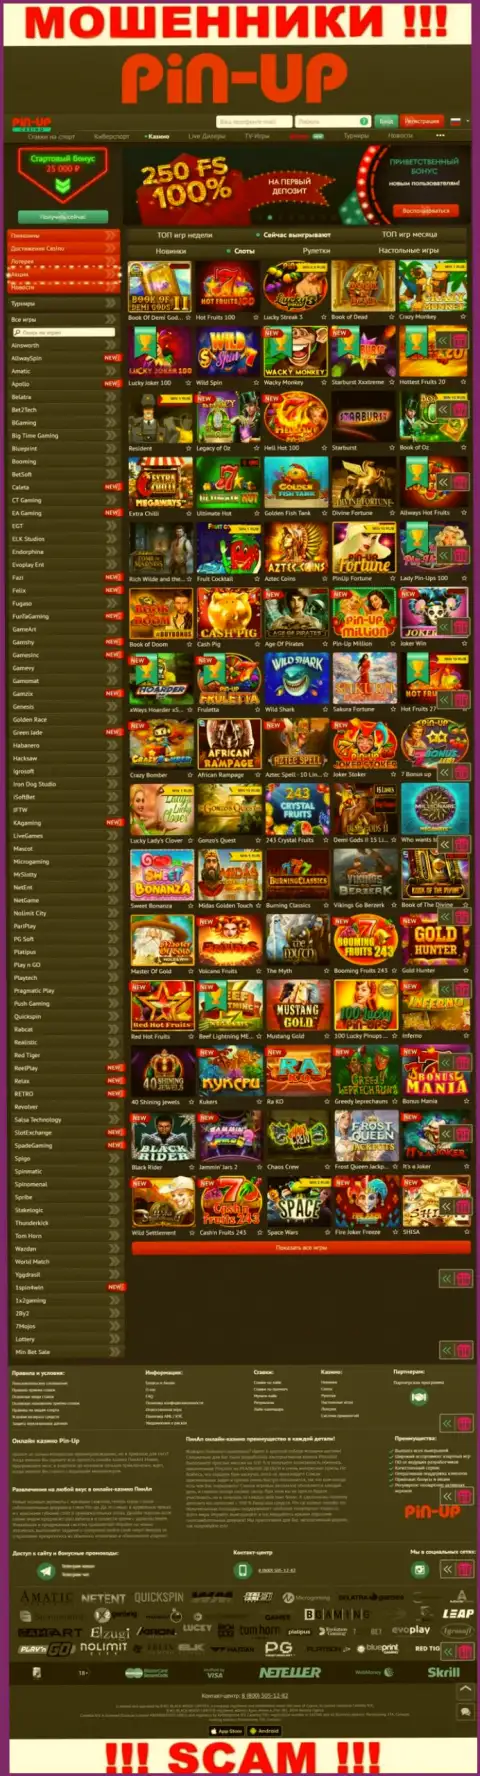 Пин-Ап Казино - официальный web-сайт internet-ворюг PinUp Casino